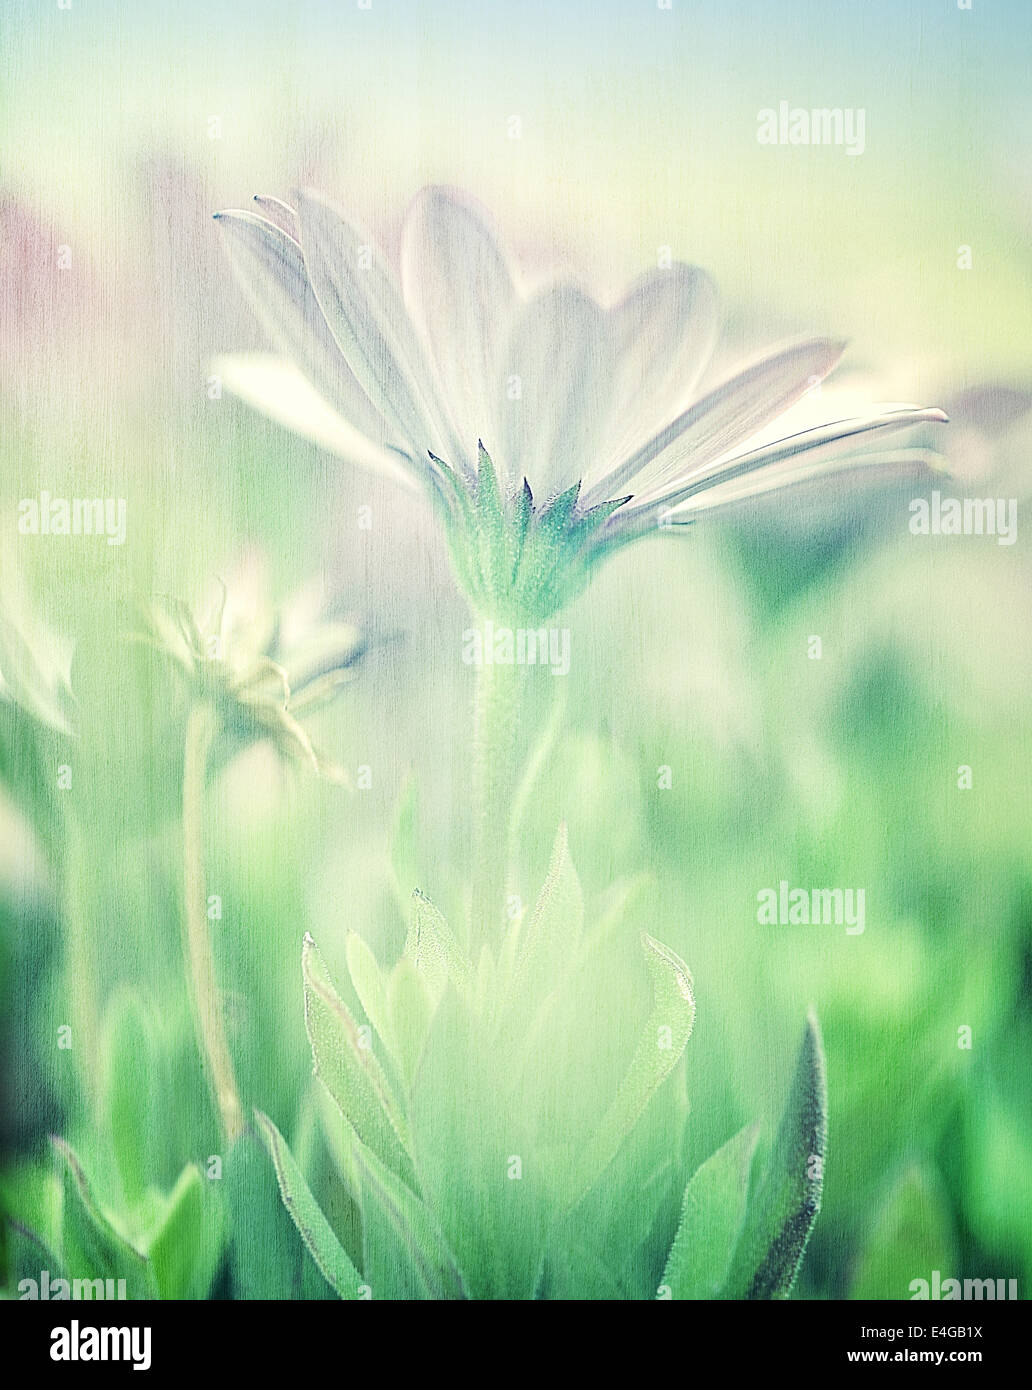 Sanfte Daisy Field, Weichzeichner, bildende Kunst, Foto mit schönen weißen Blüten, Blumen Bildschirmschoner, Unschärfe-Effekt, Schönheit der Natur Stockfoto